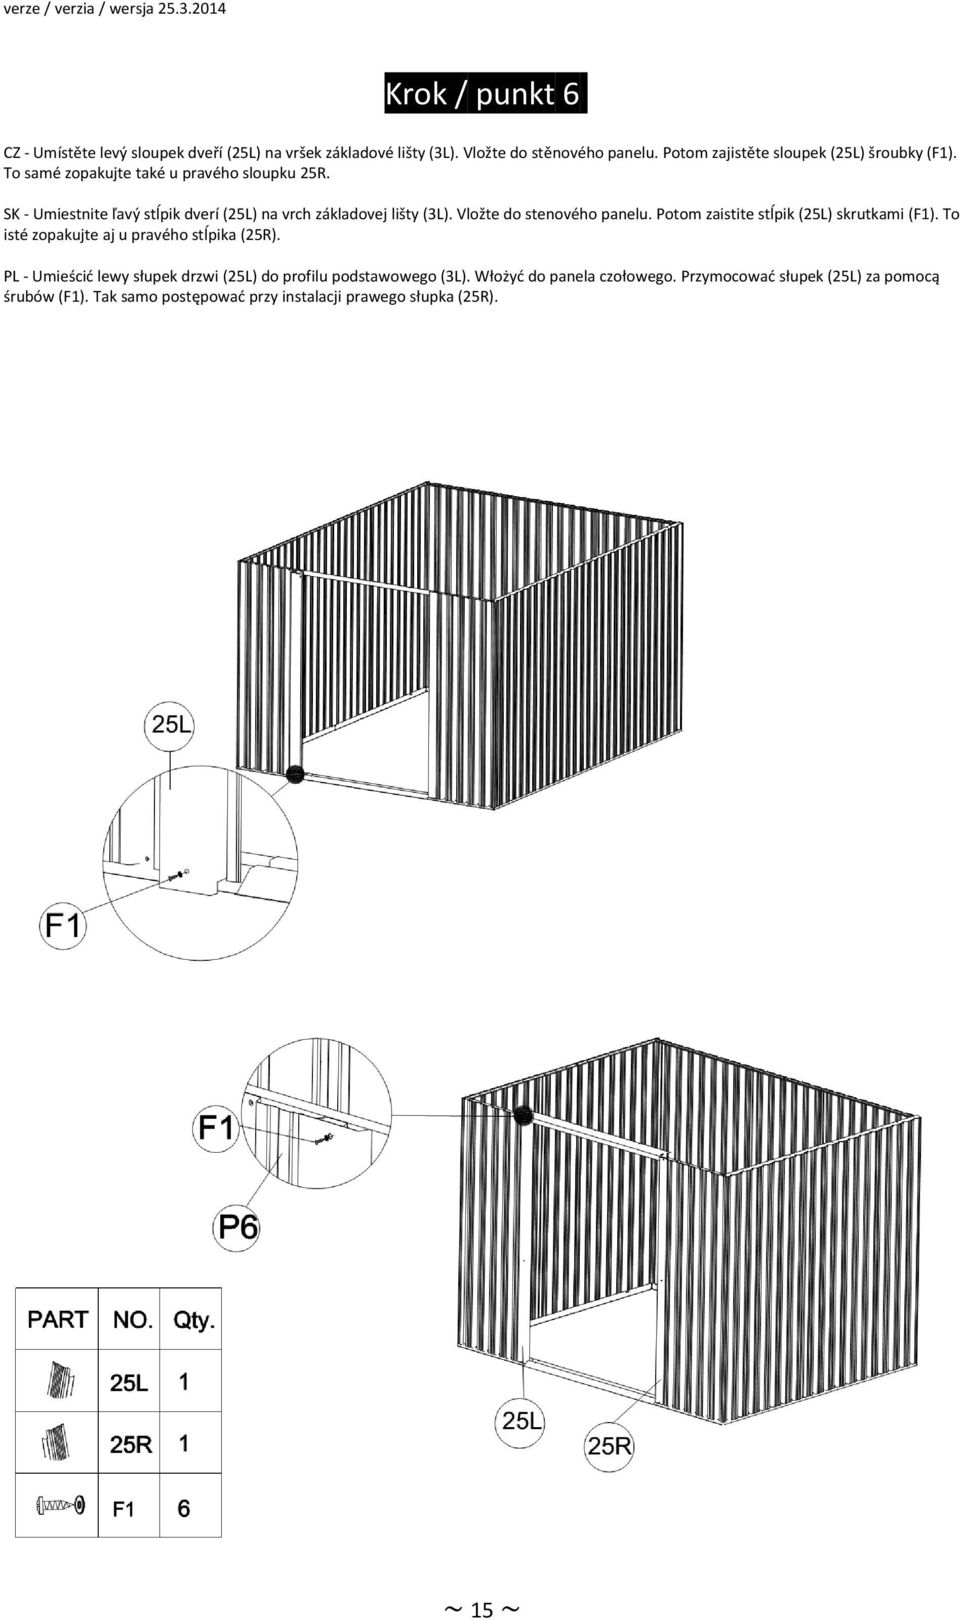 SK Umiestnite ľavý stĺpik dverí (25L) na vrch základovej lišty (3L). Vložte do stenového panelu. Potom zaistite stĺpik (25L) skrutkami (F1).